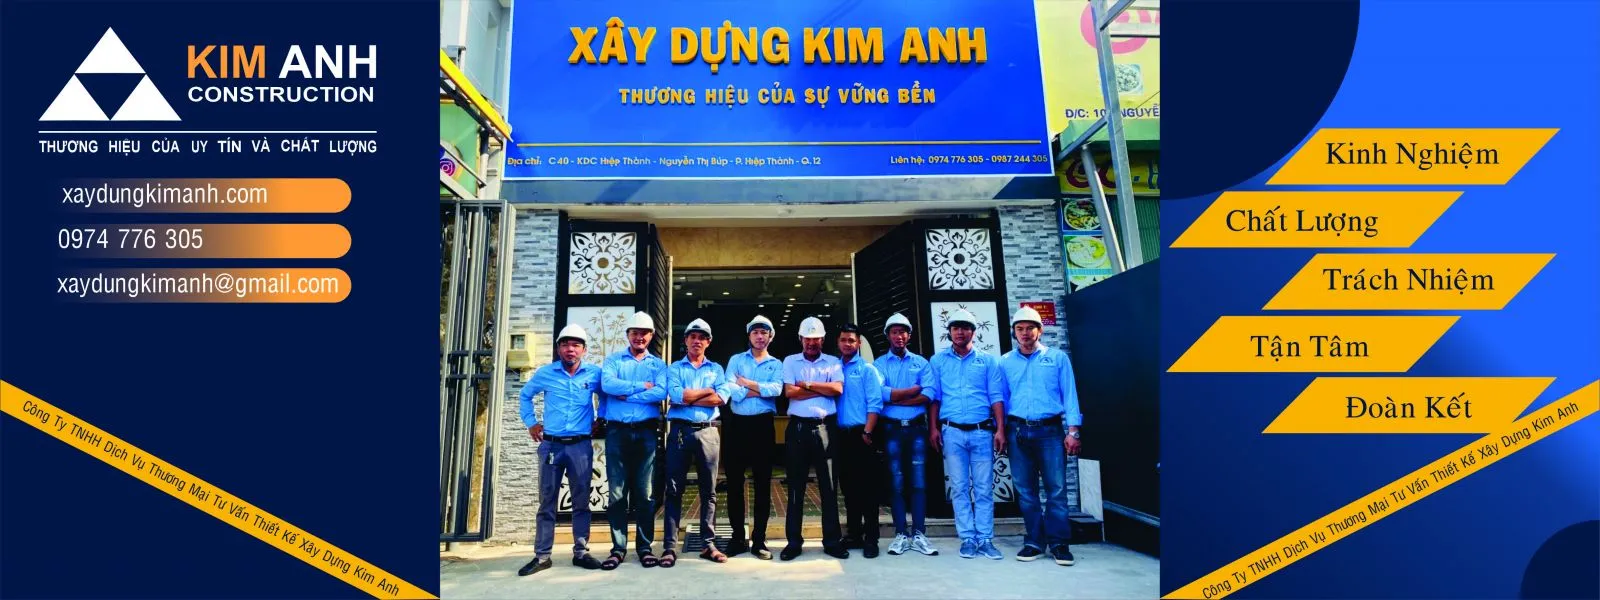 Công ty xây dựng Tỉnh Bình Dương - Xây Dựng Kim Anh